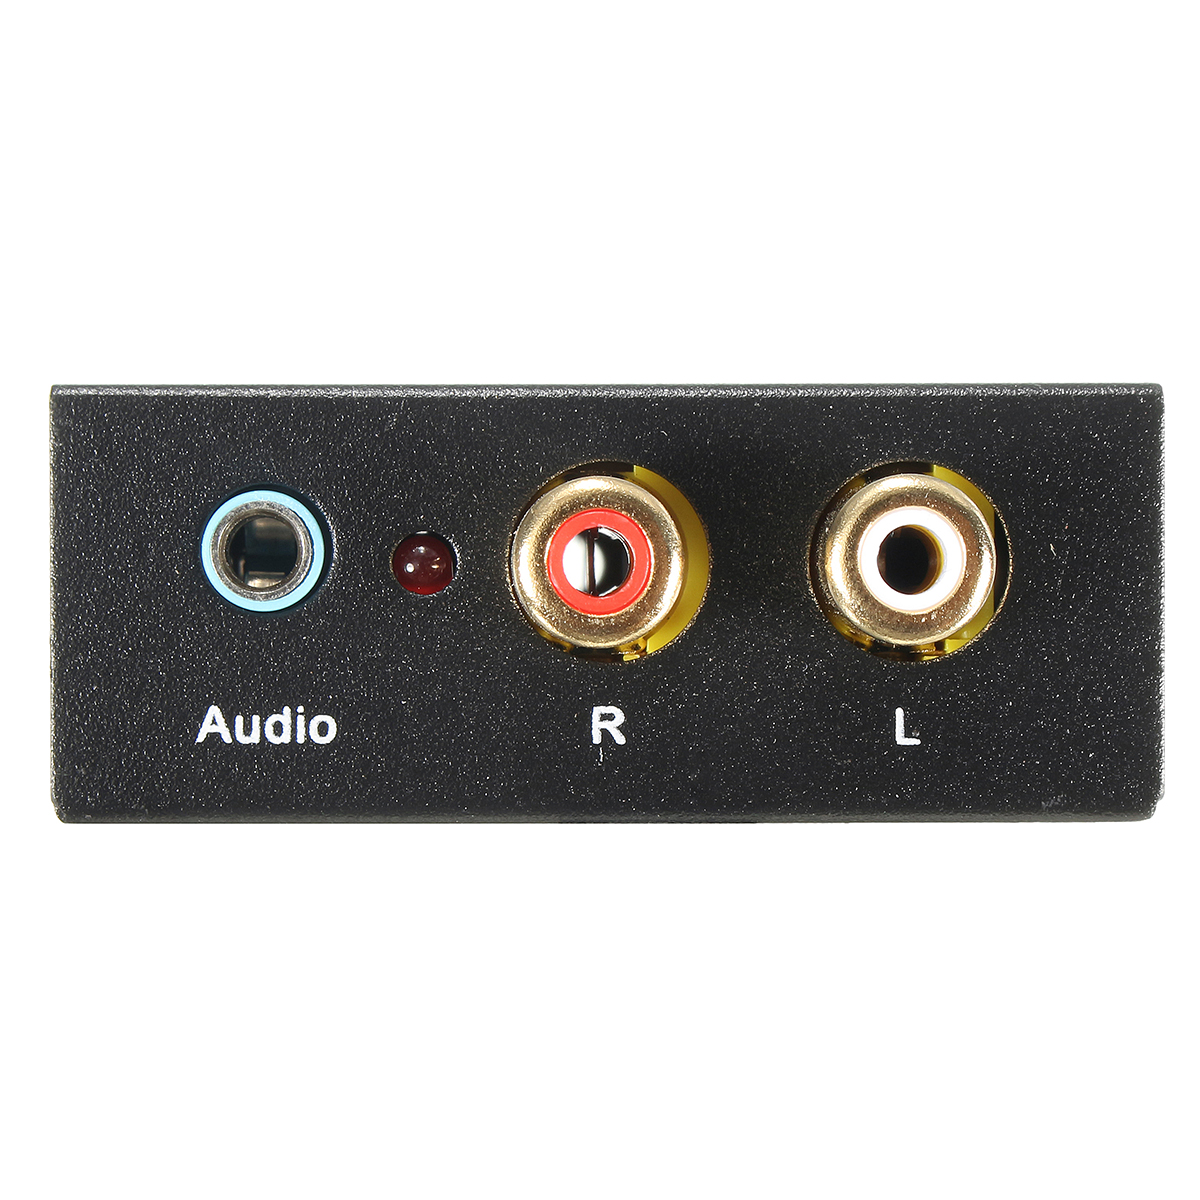 Spdif аудио. Аудио s/PDIF коаксиальный на телевизоре. Коаксиал аудио SPDIF. RCA (S/PDIF коаксиальный). Кабель Optical Audio out RCA 5.1.